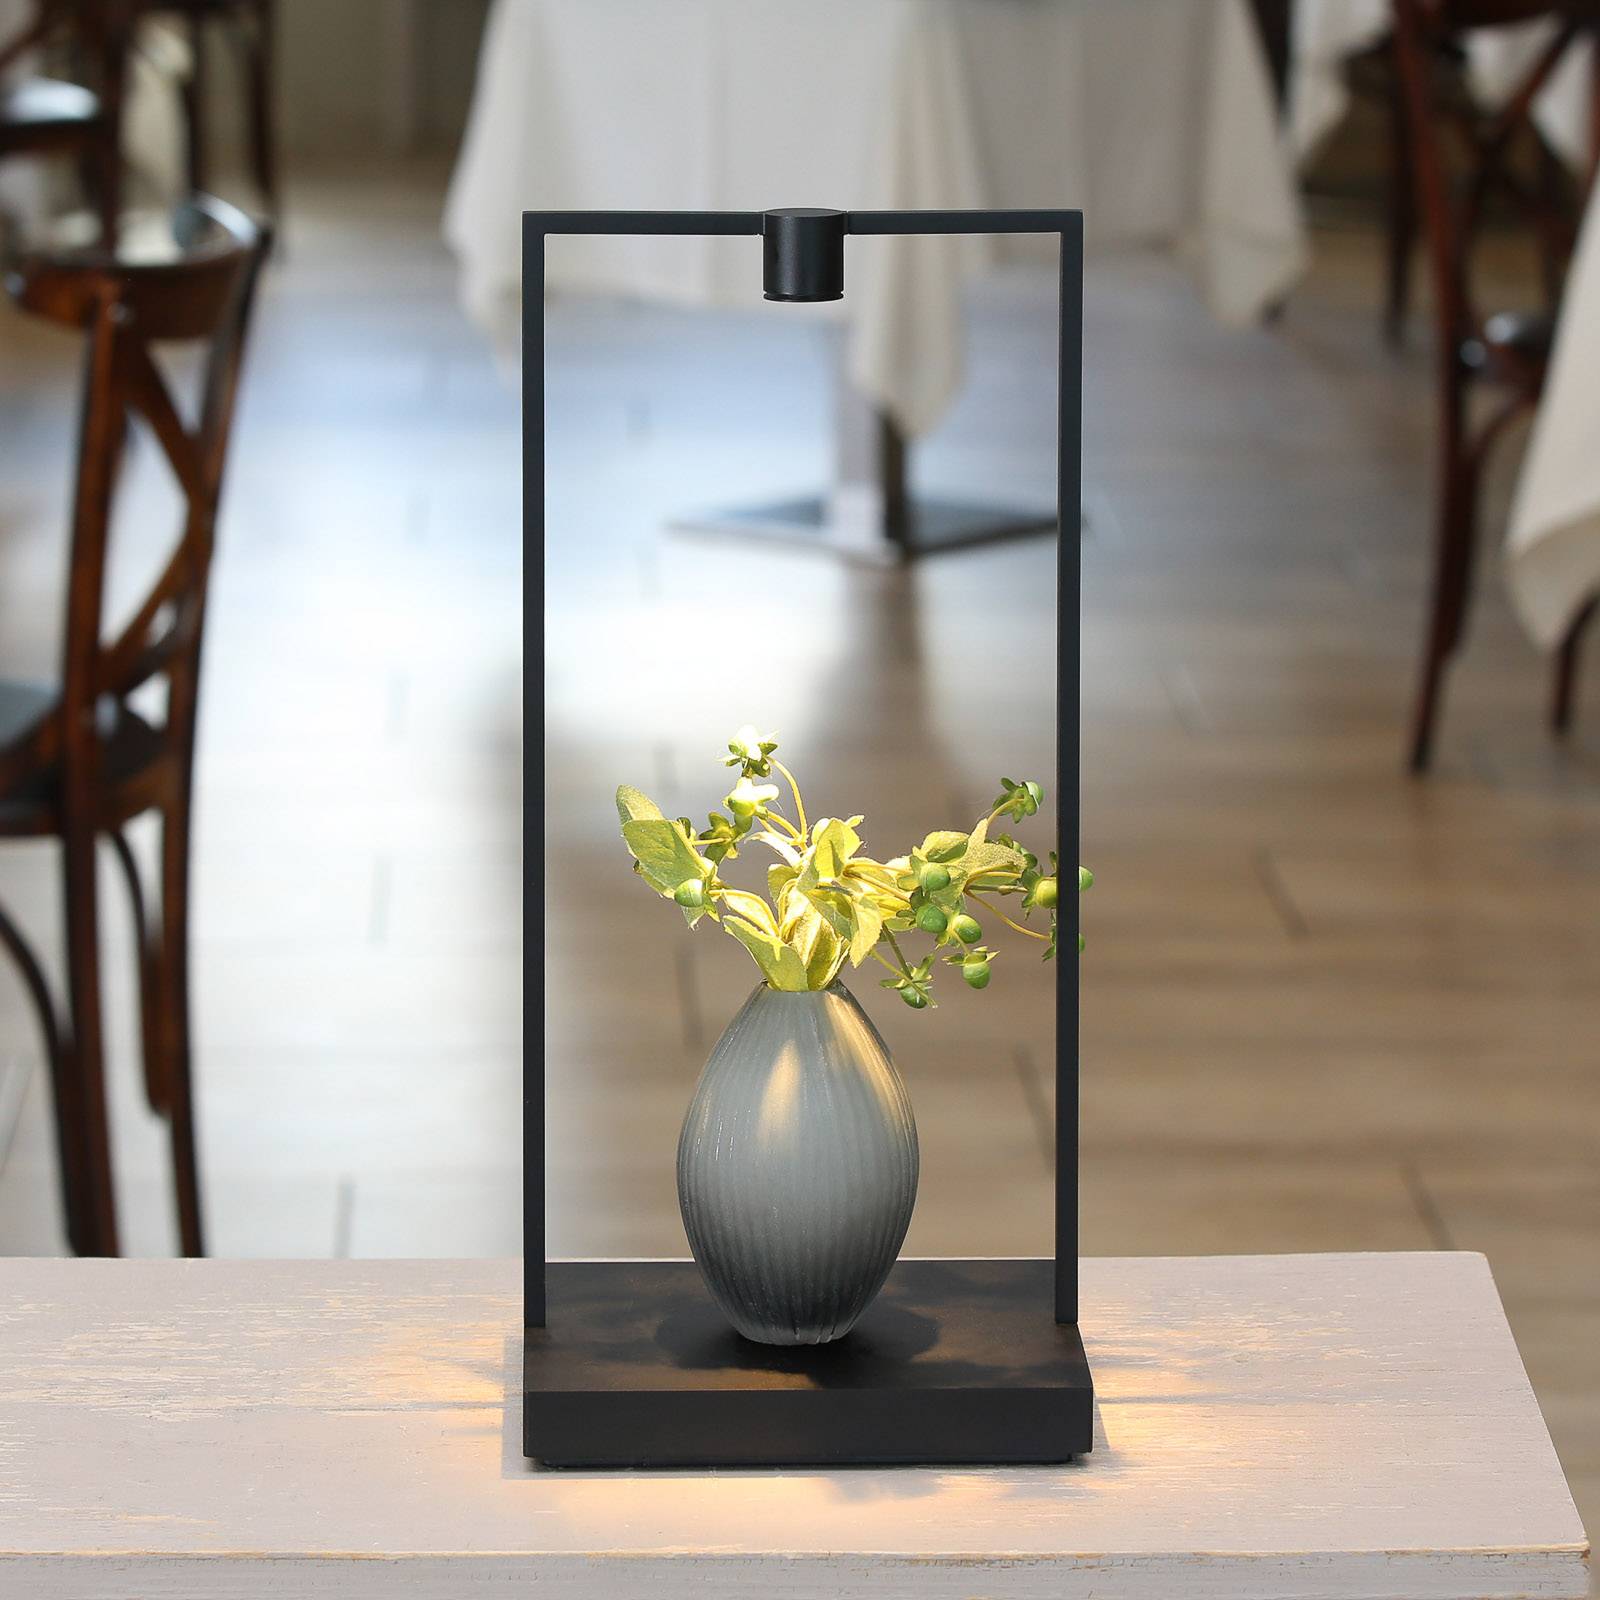 Artemide curiosity led asztali lámpa, magasság 45 cm